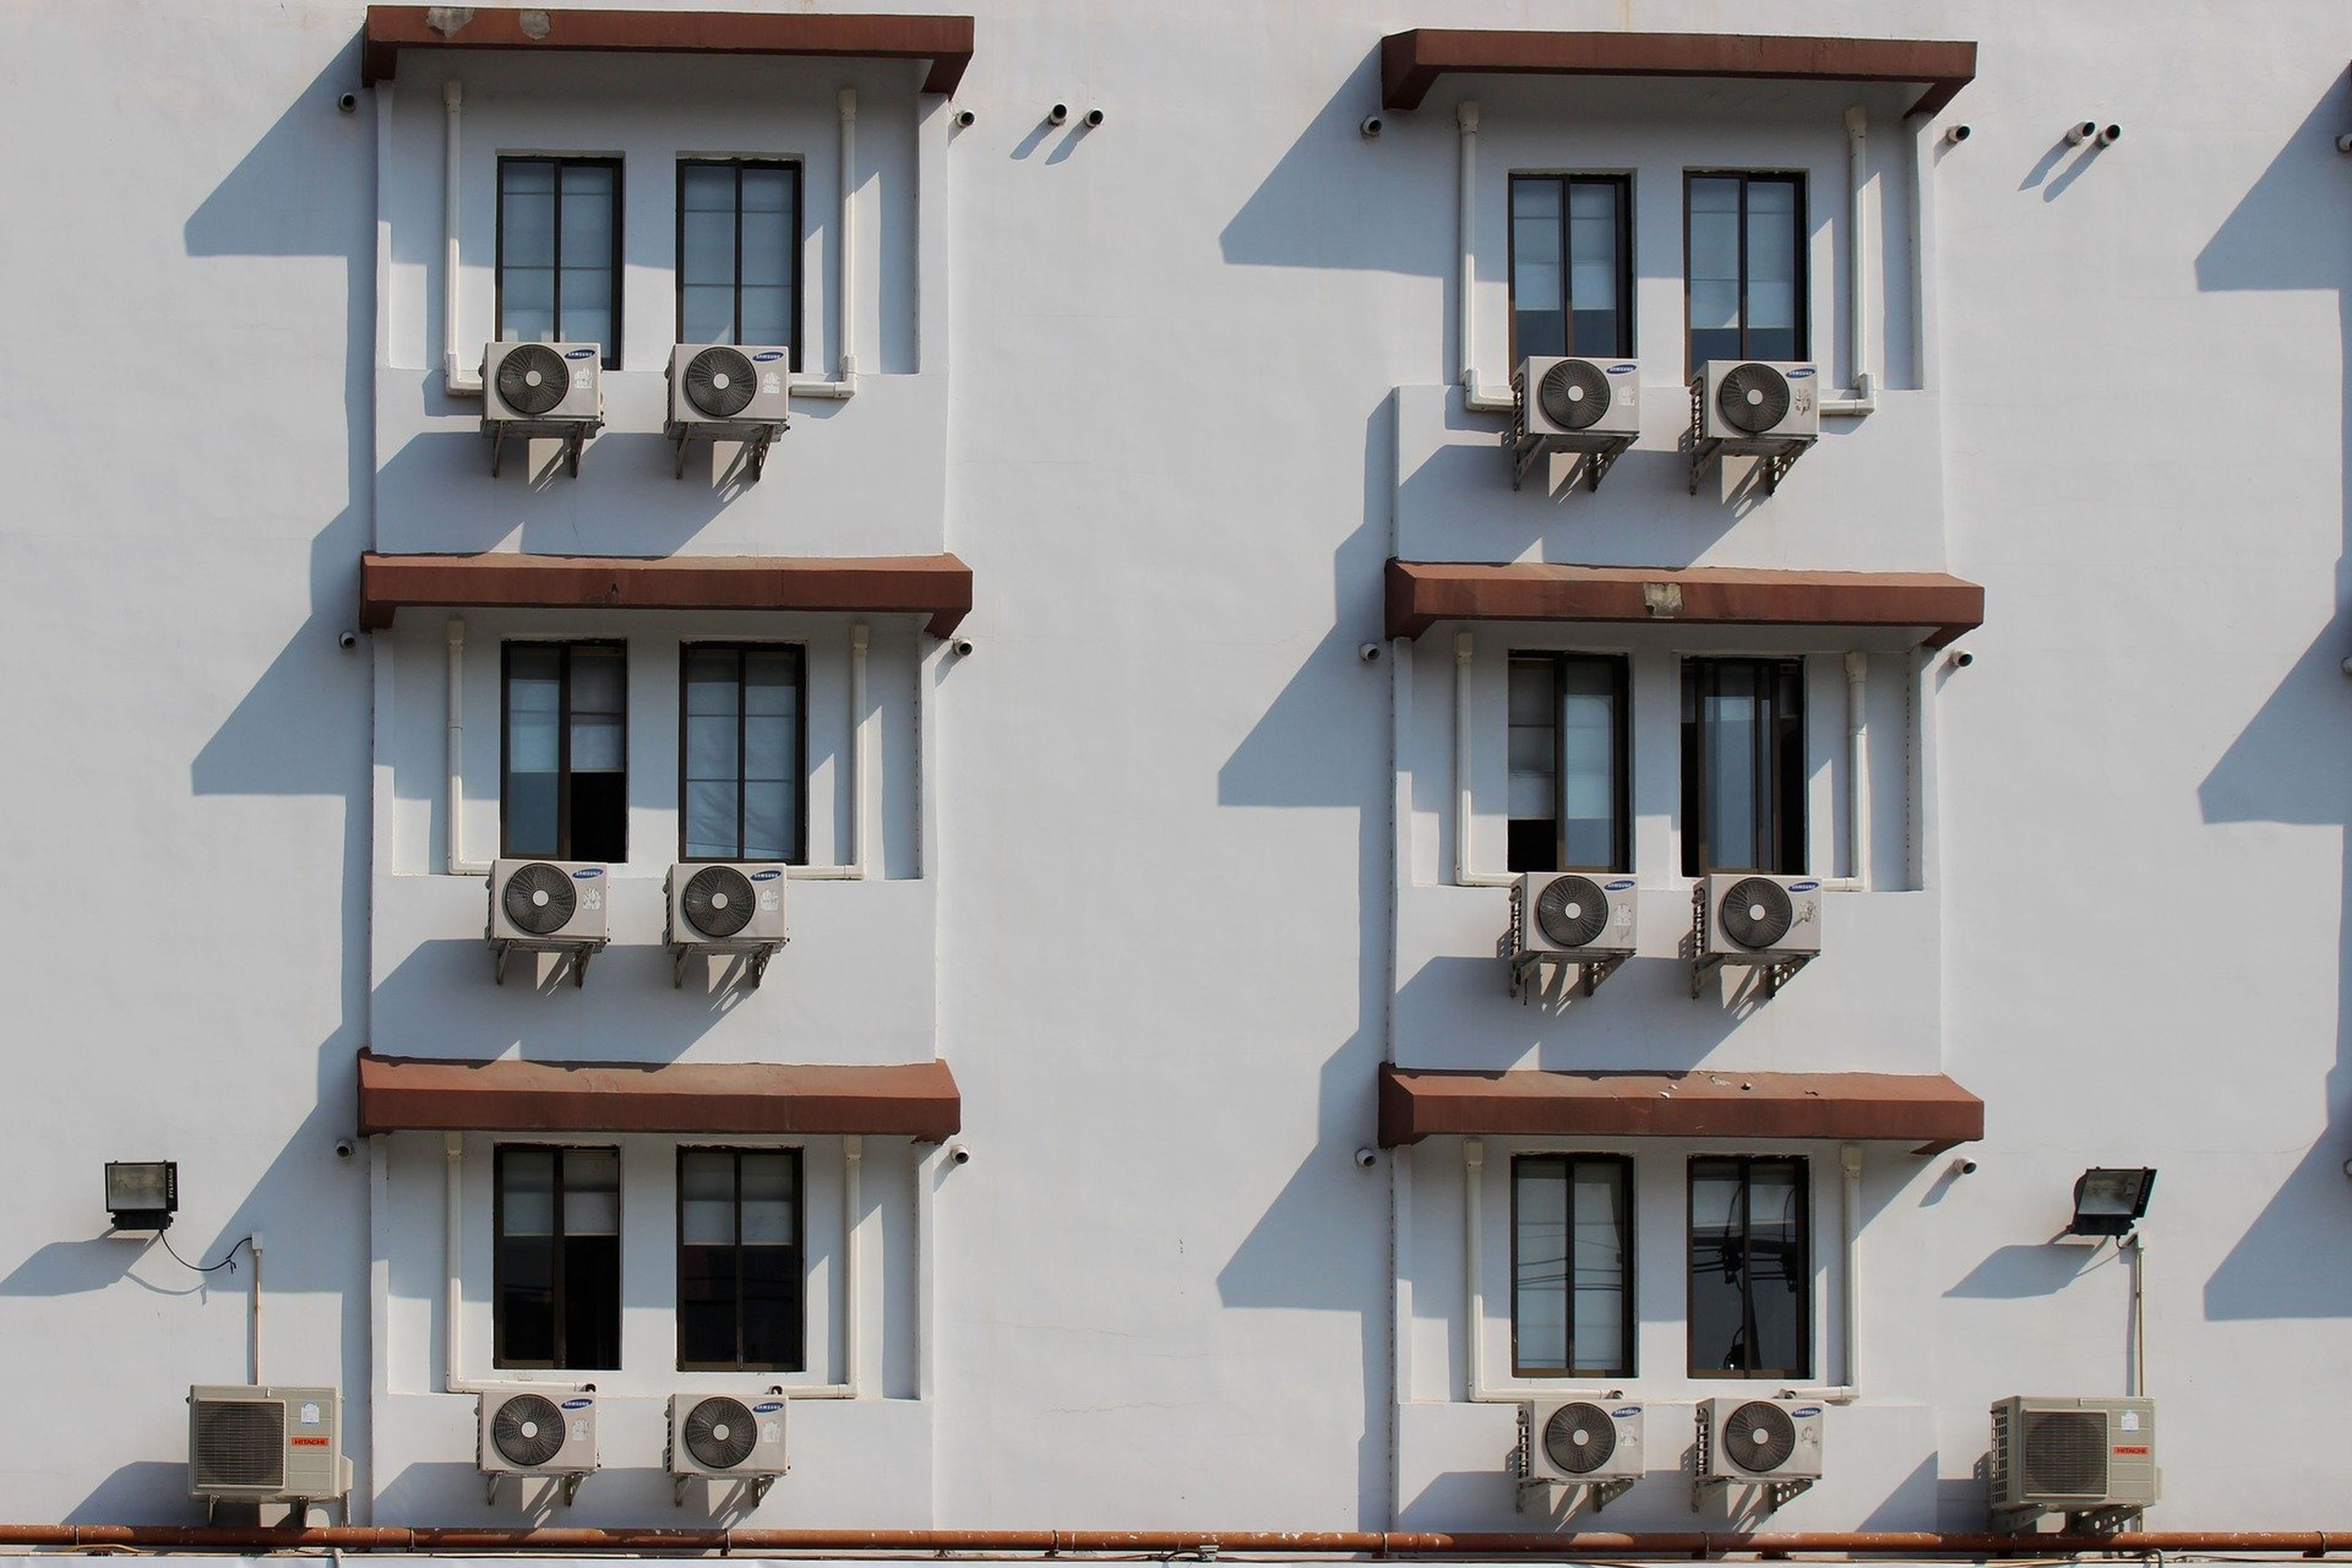 Varias casas con el aparato de aire acondicionado en el exterior.